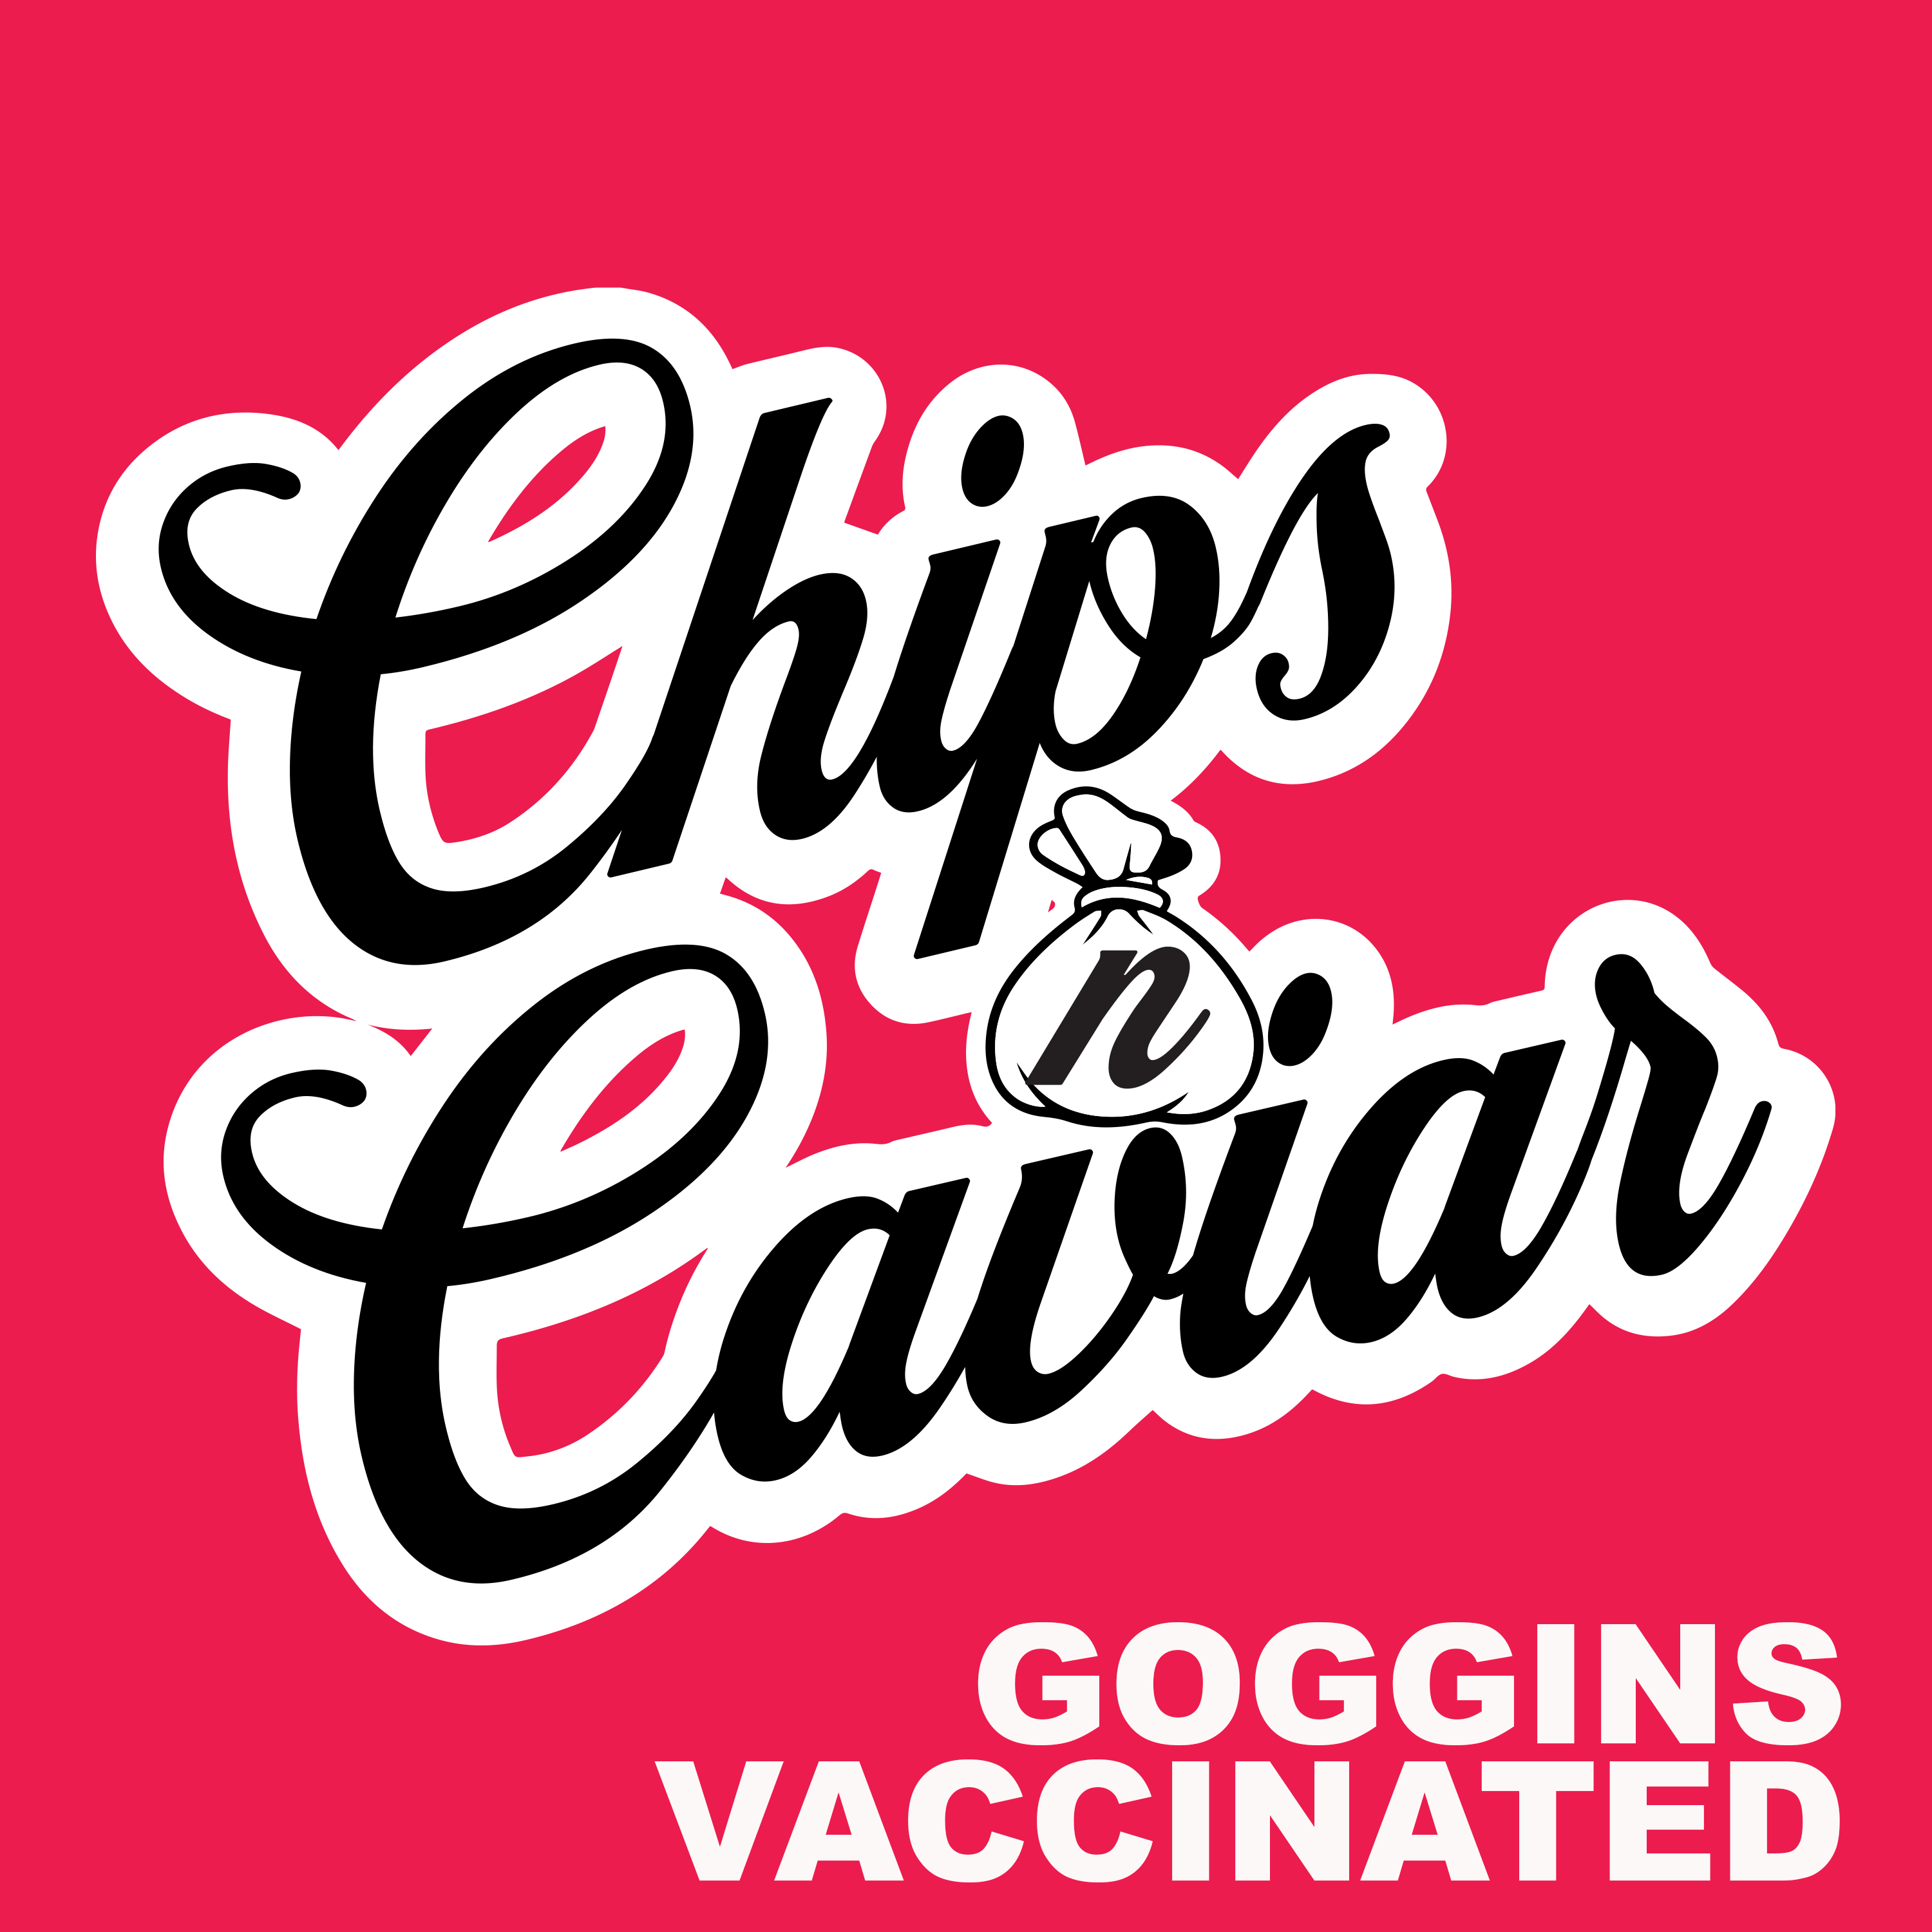 [CLIP] Is David Goggins Covid19 Vaccinated?